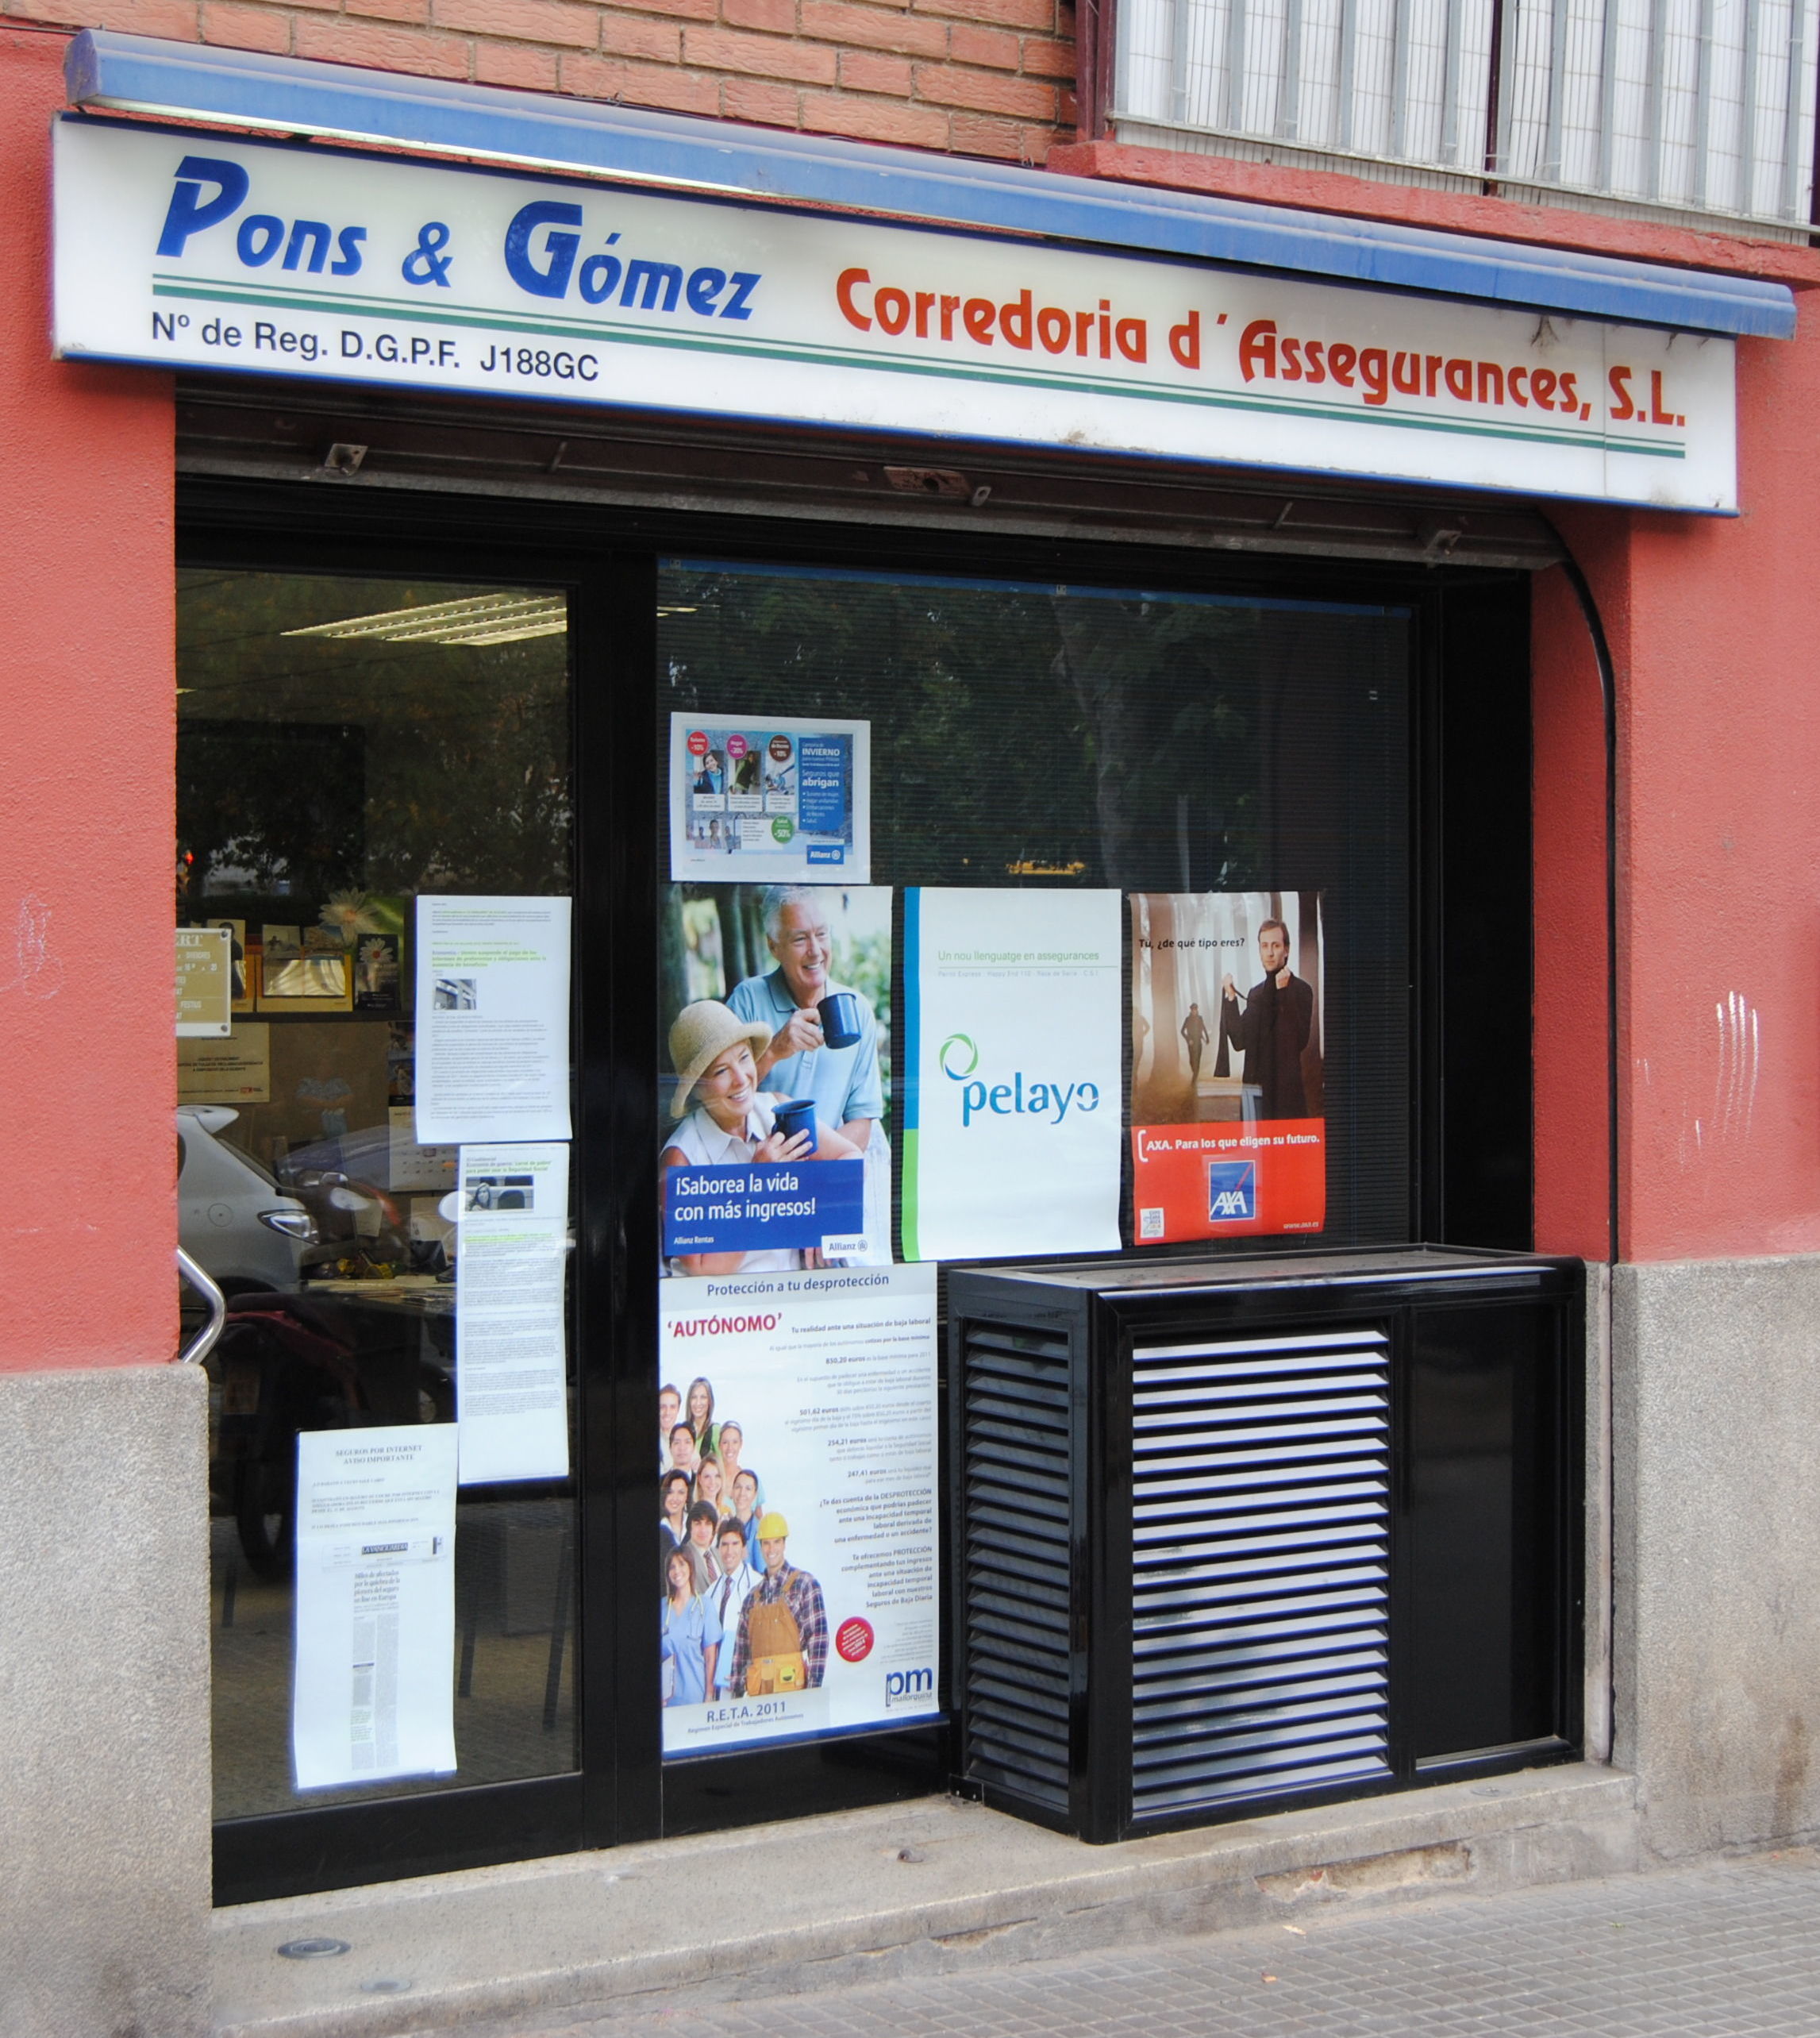 Foto 1 de Seguros en Santa Coloma de Gramenet | Pons & Gómez Corredoria d'Assegurances